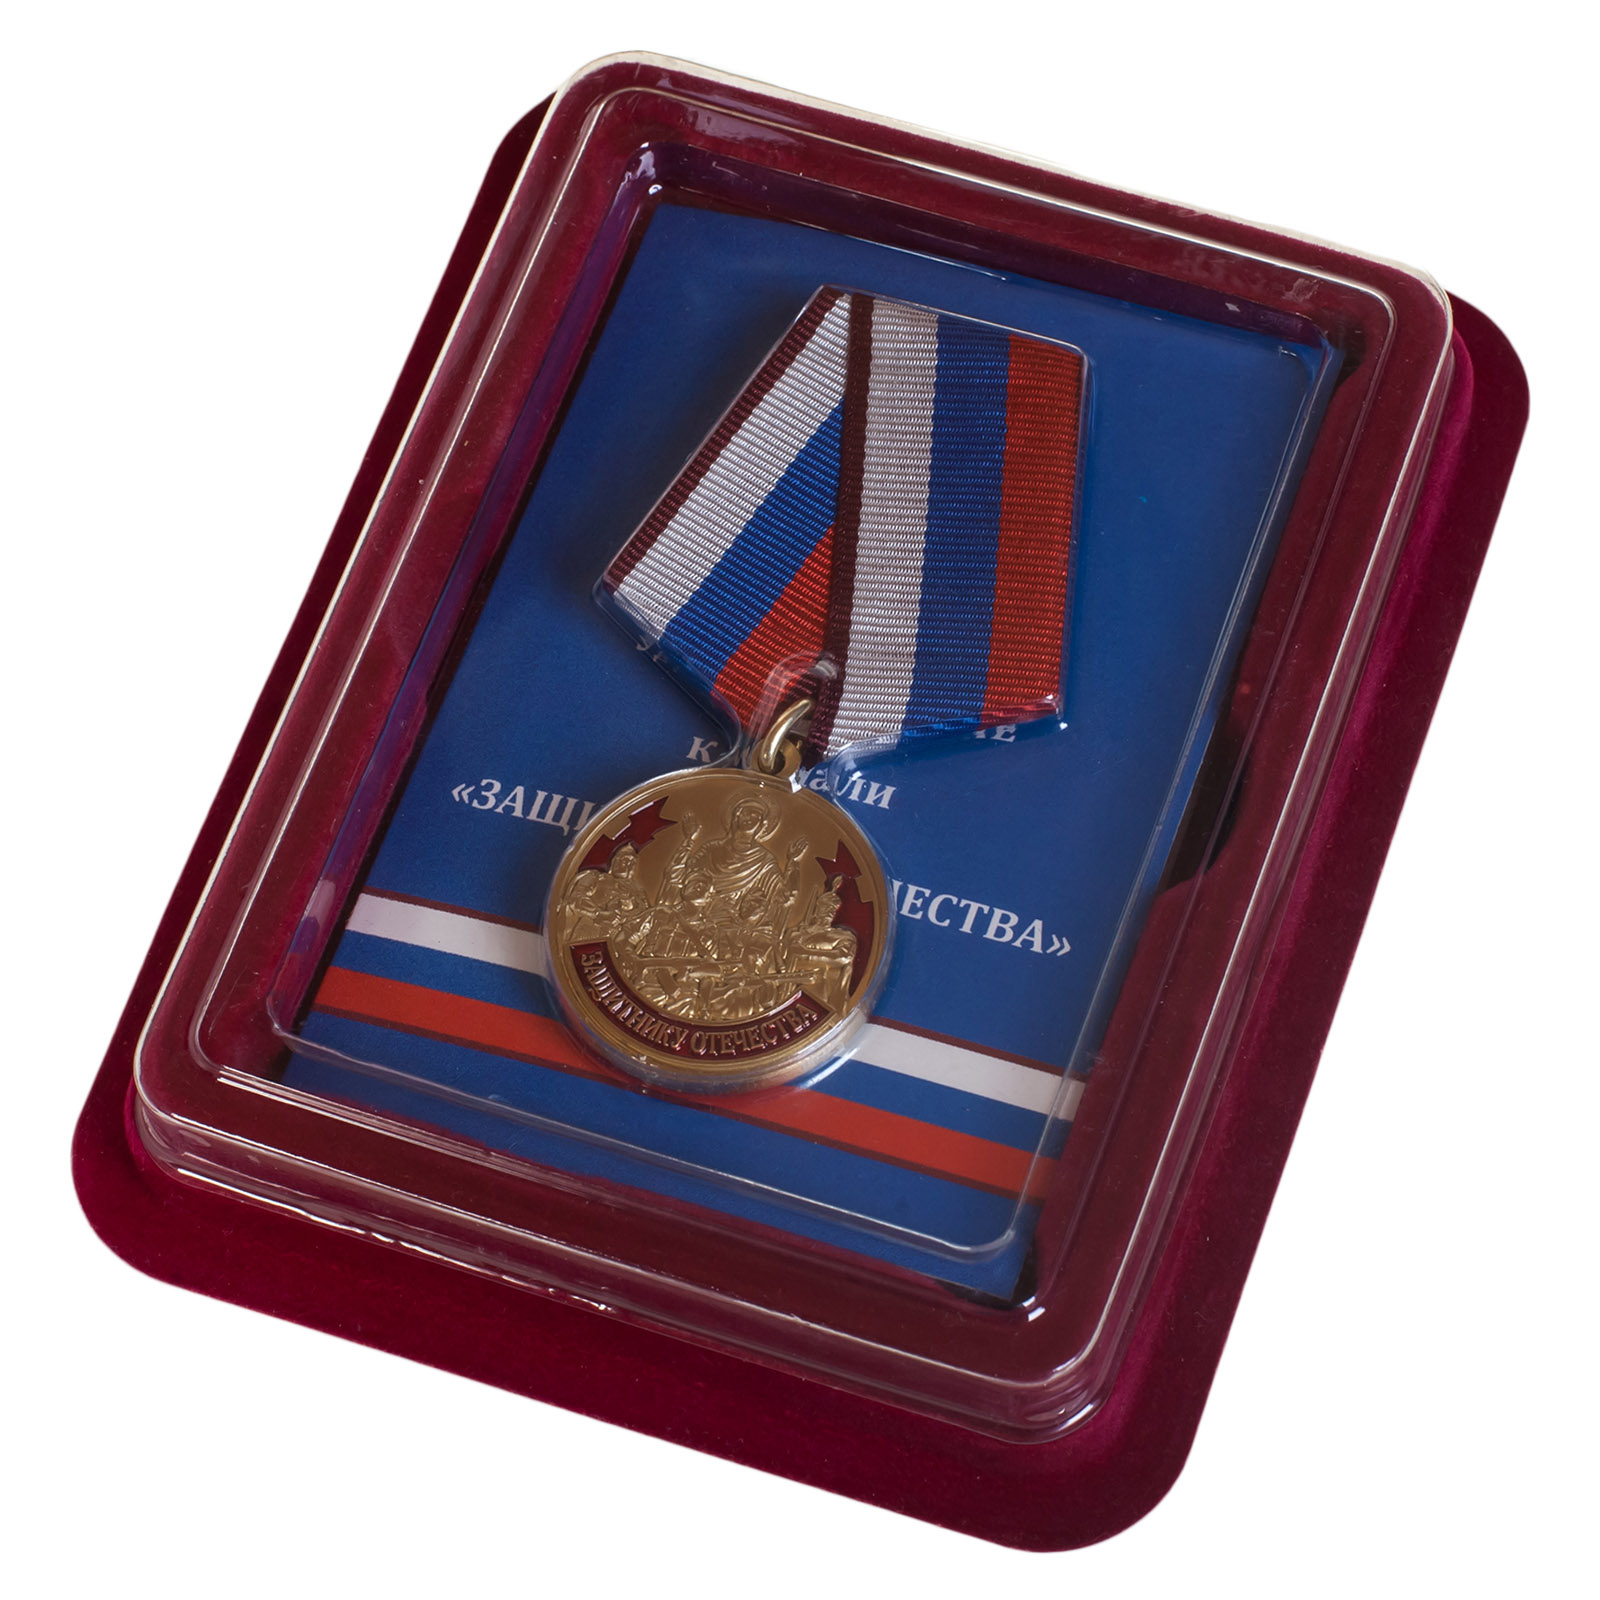 Купить латунную медаль Защитнику Отечества 23 февраля выгодно с доставкой